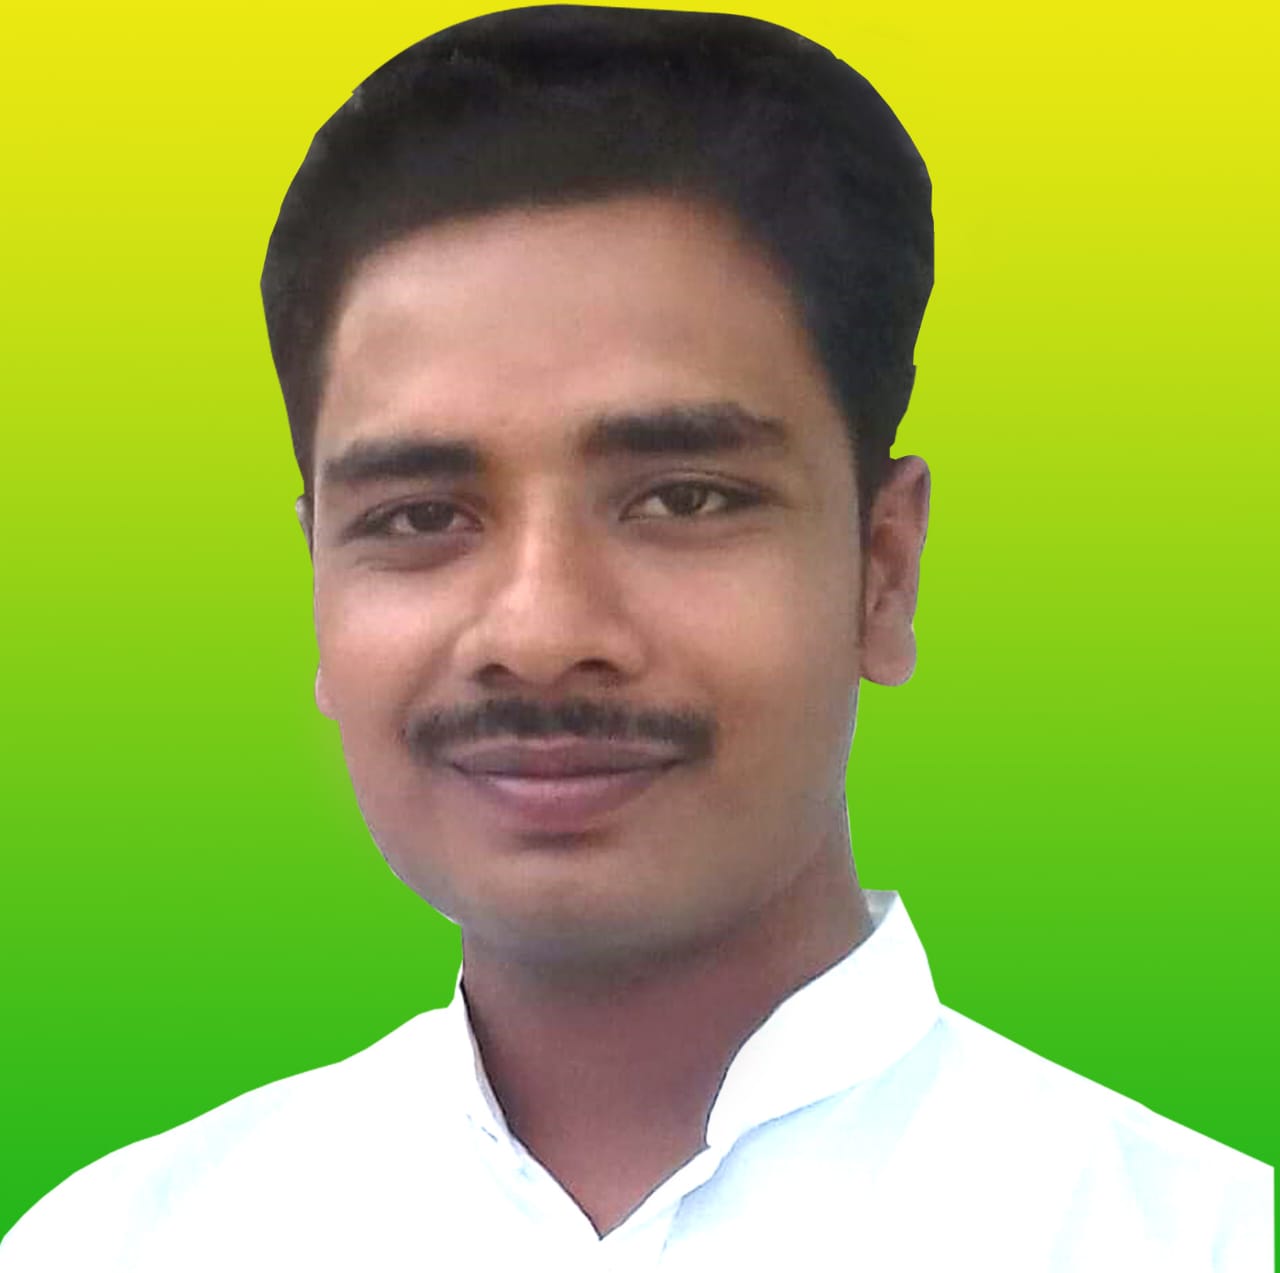 राष्ट्रीय जन जन पार्टी के प्रदेश प्रवक्ता सकेत कुमार ने यूरिया खाद और किसान विरोधी हथकंडे पर सरकार को घेरा